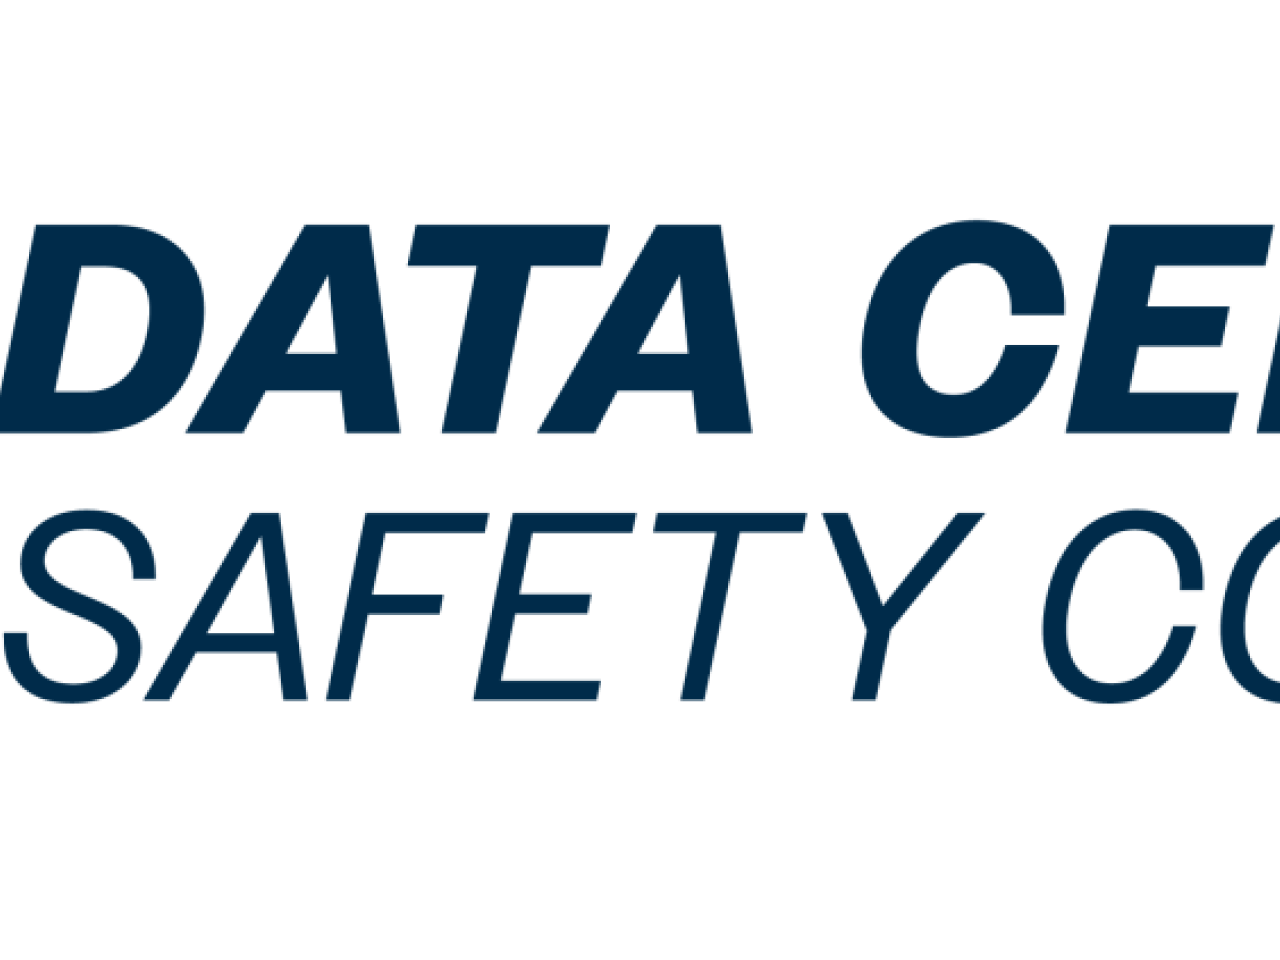 Data Center Safety Council